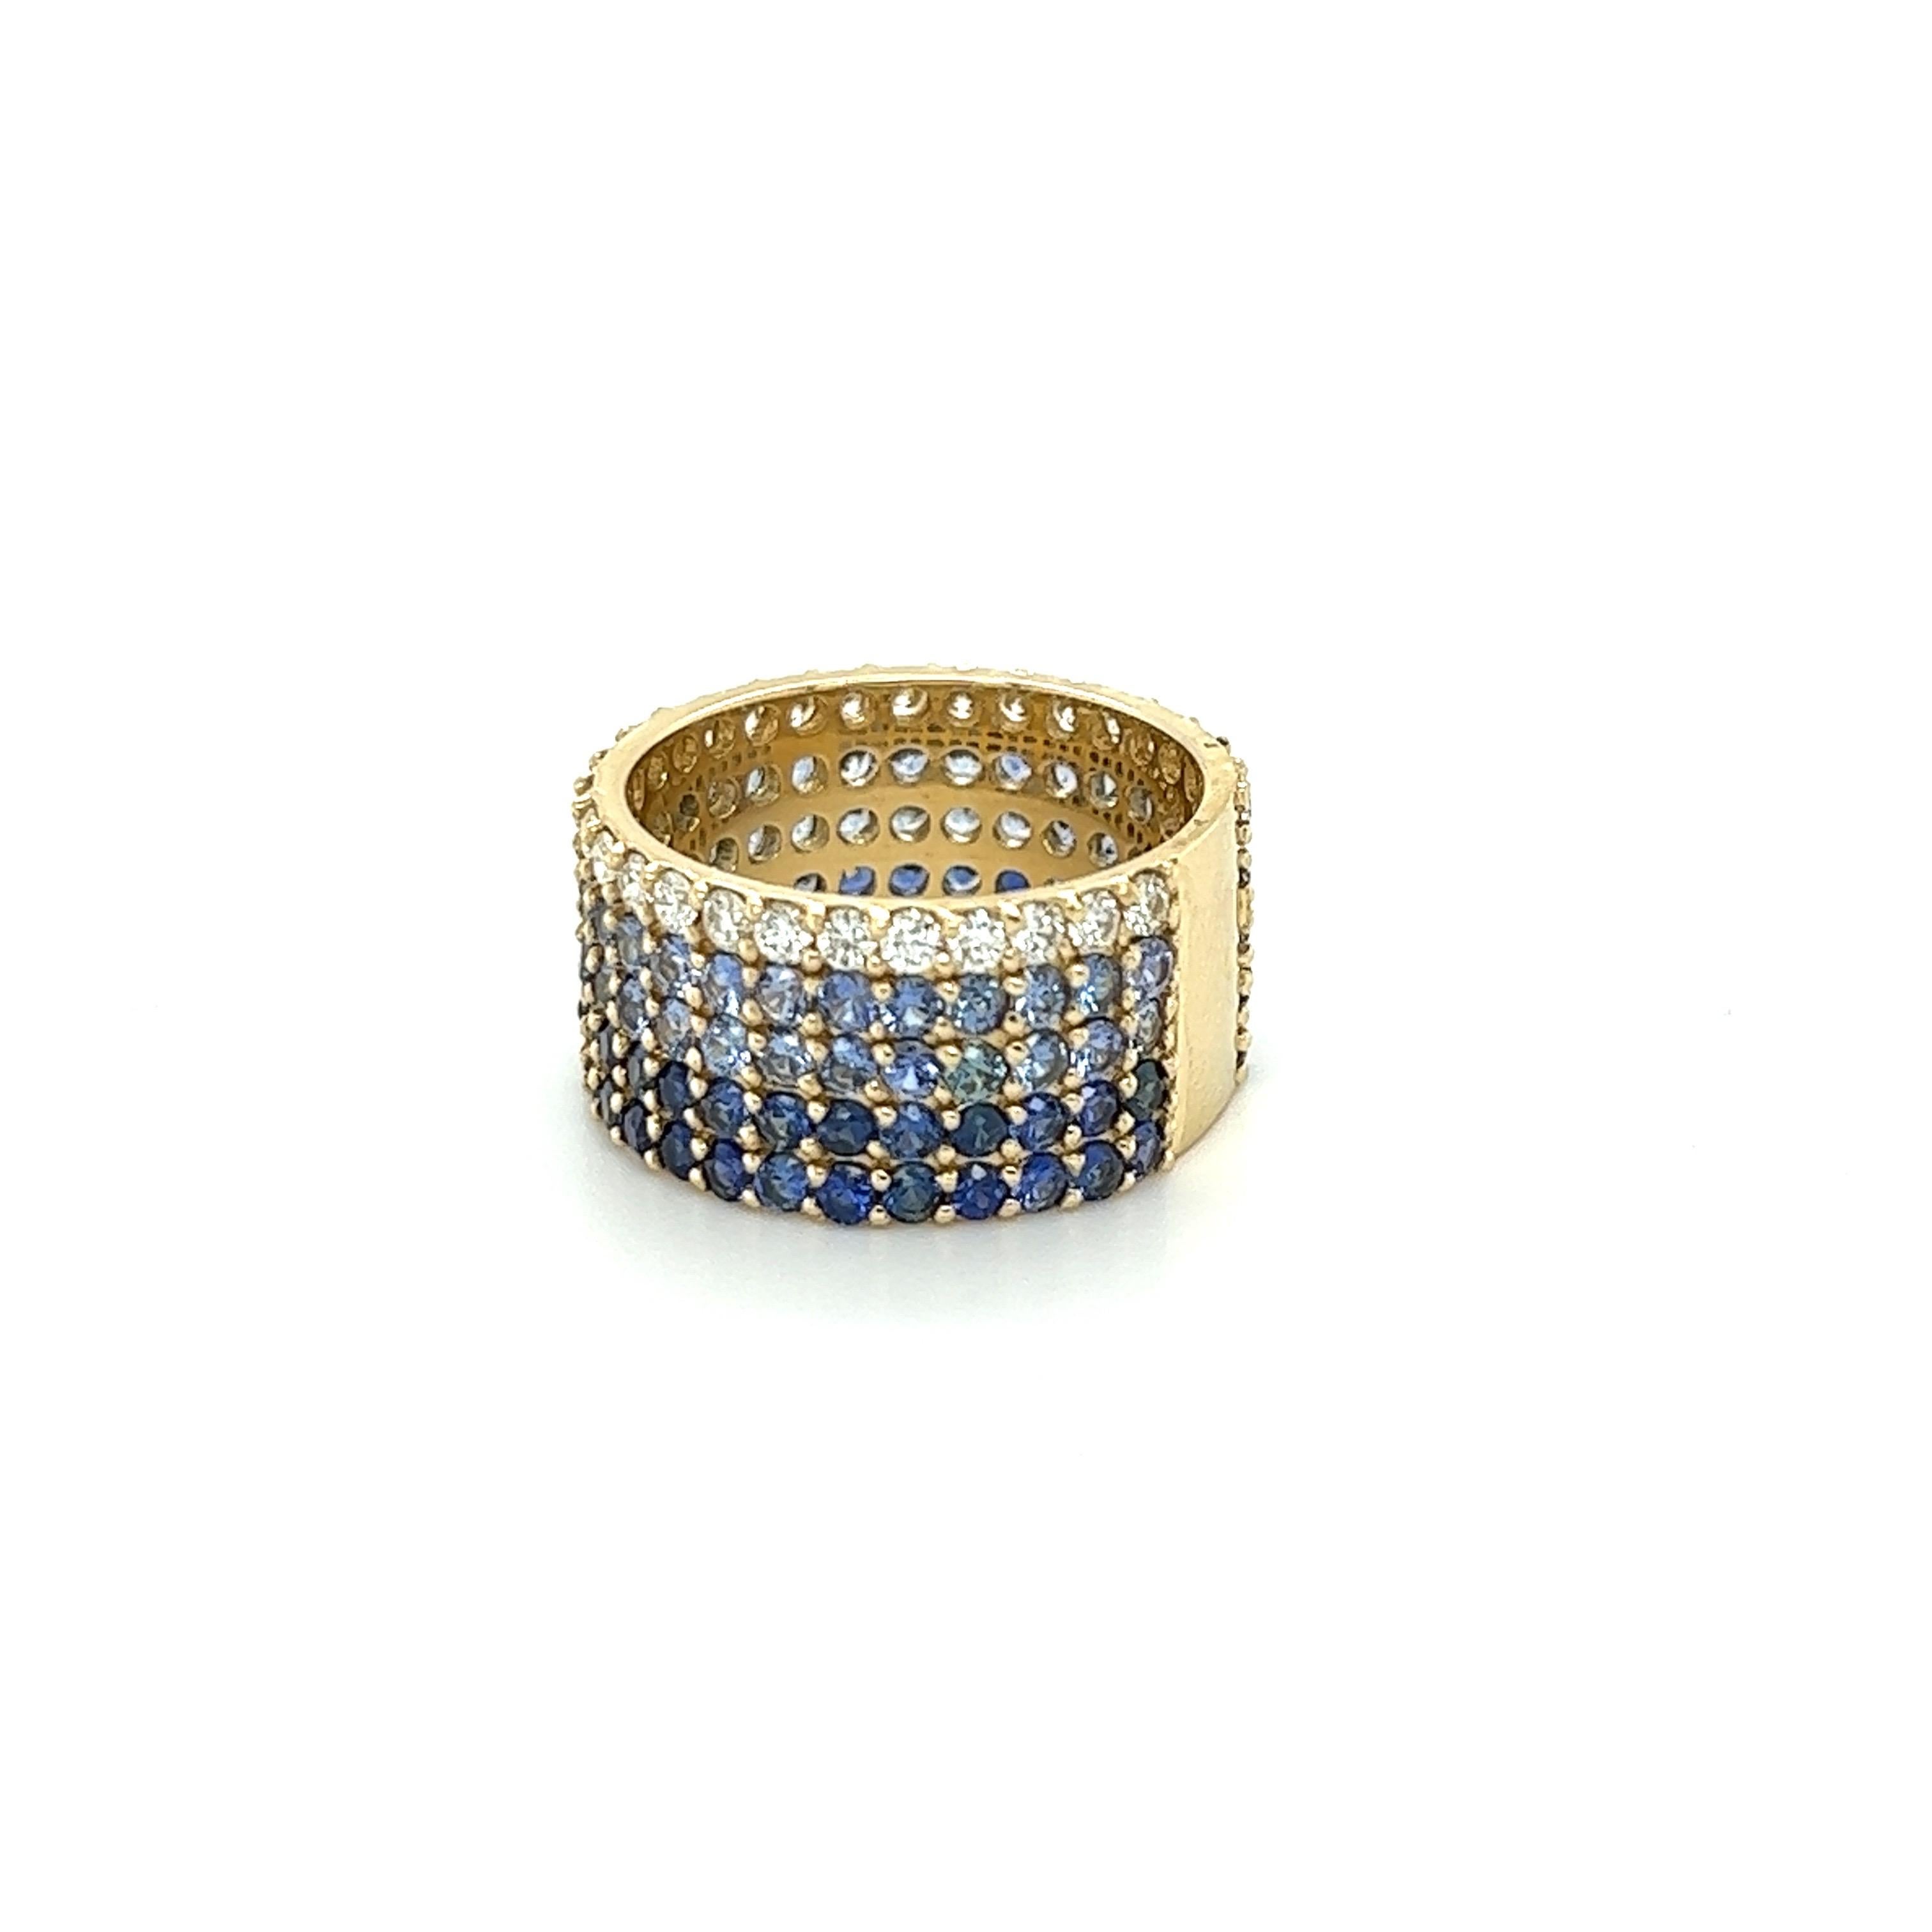 Dieser Ring hat natürliche blaue Saphire mit einem Gewicht von 3,77 Karat und natürliche weiße Diamanten im Rundschliff mit einem Gewicht von 0,75 Karat. Das Gesamtkaratgewicht des Rings beträgt 4.52 Karat. 

Klarheit und Farbe der Diamanten sind